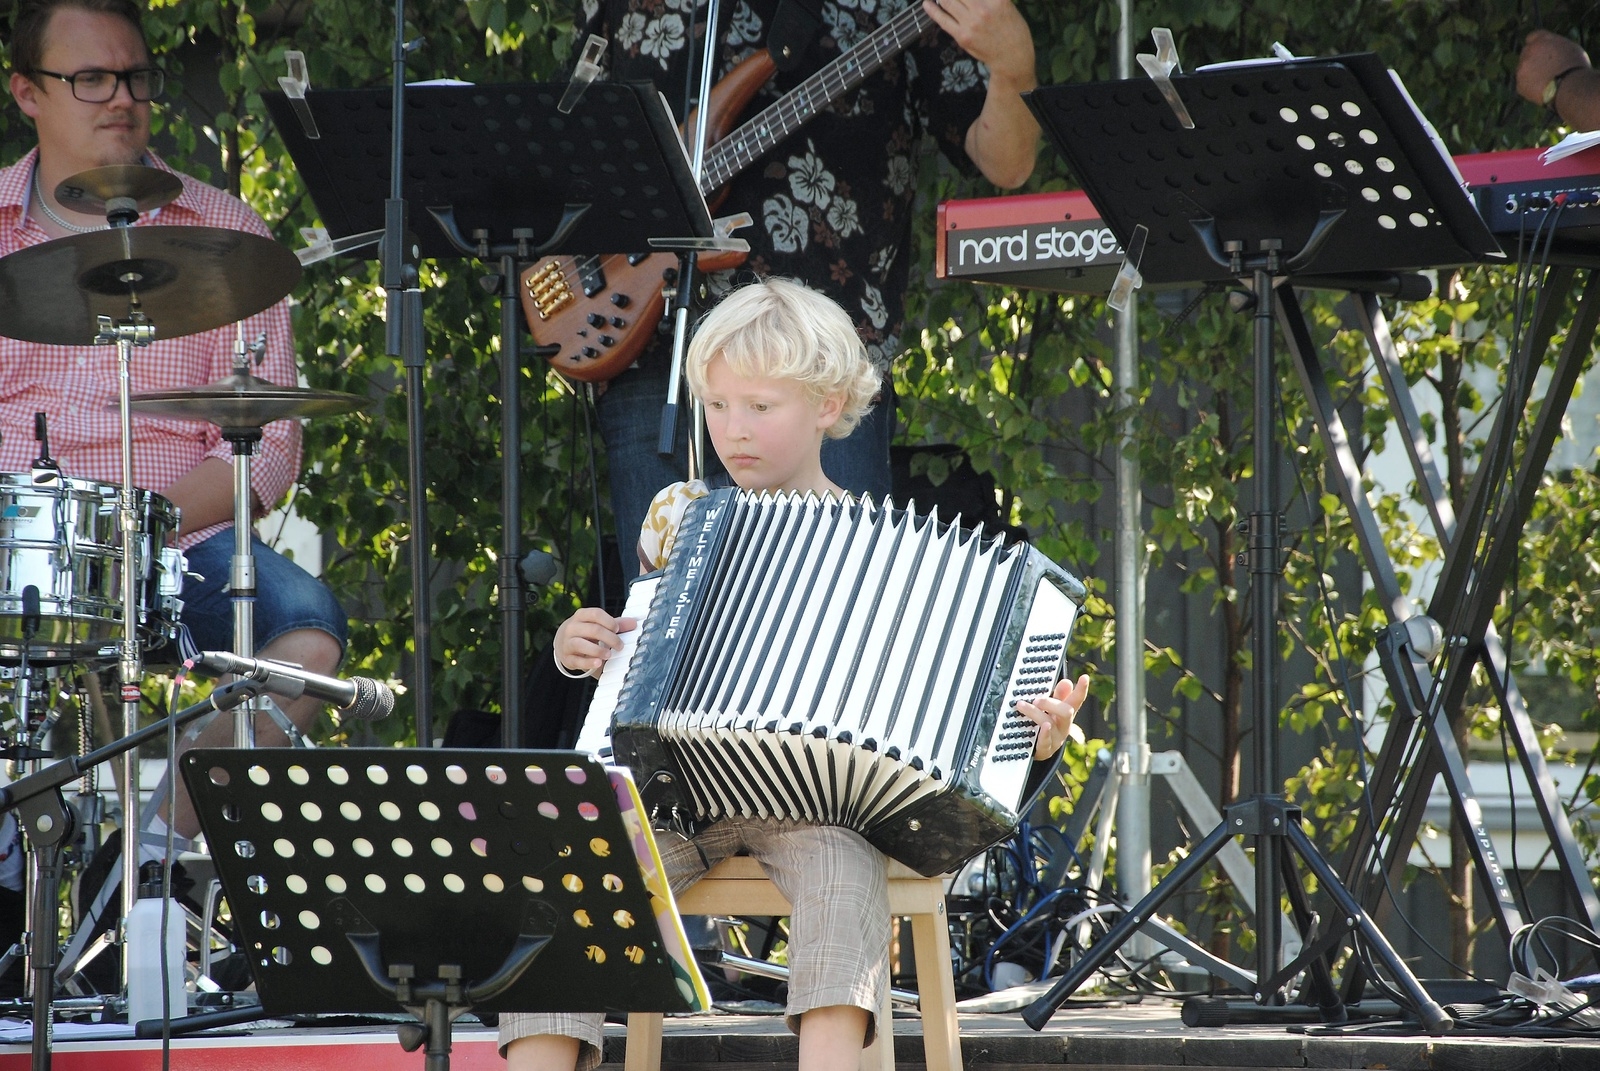 Sjuårige Elias Lind var en hejare på dragspel, och passade på att spela två låtar under allsången.